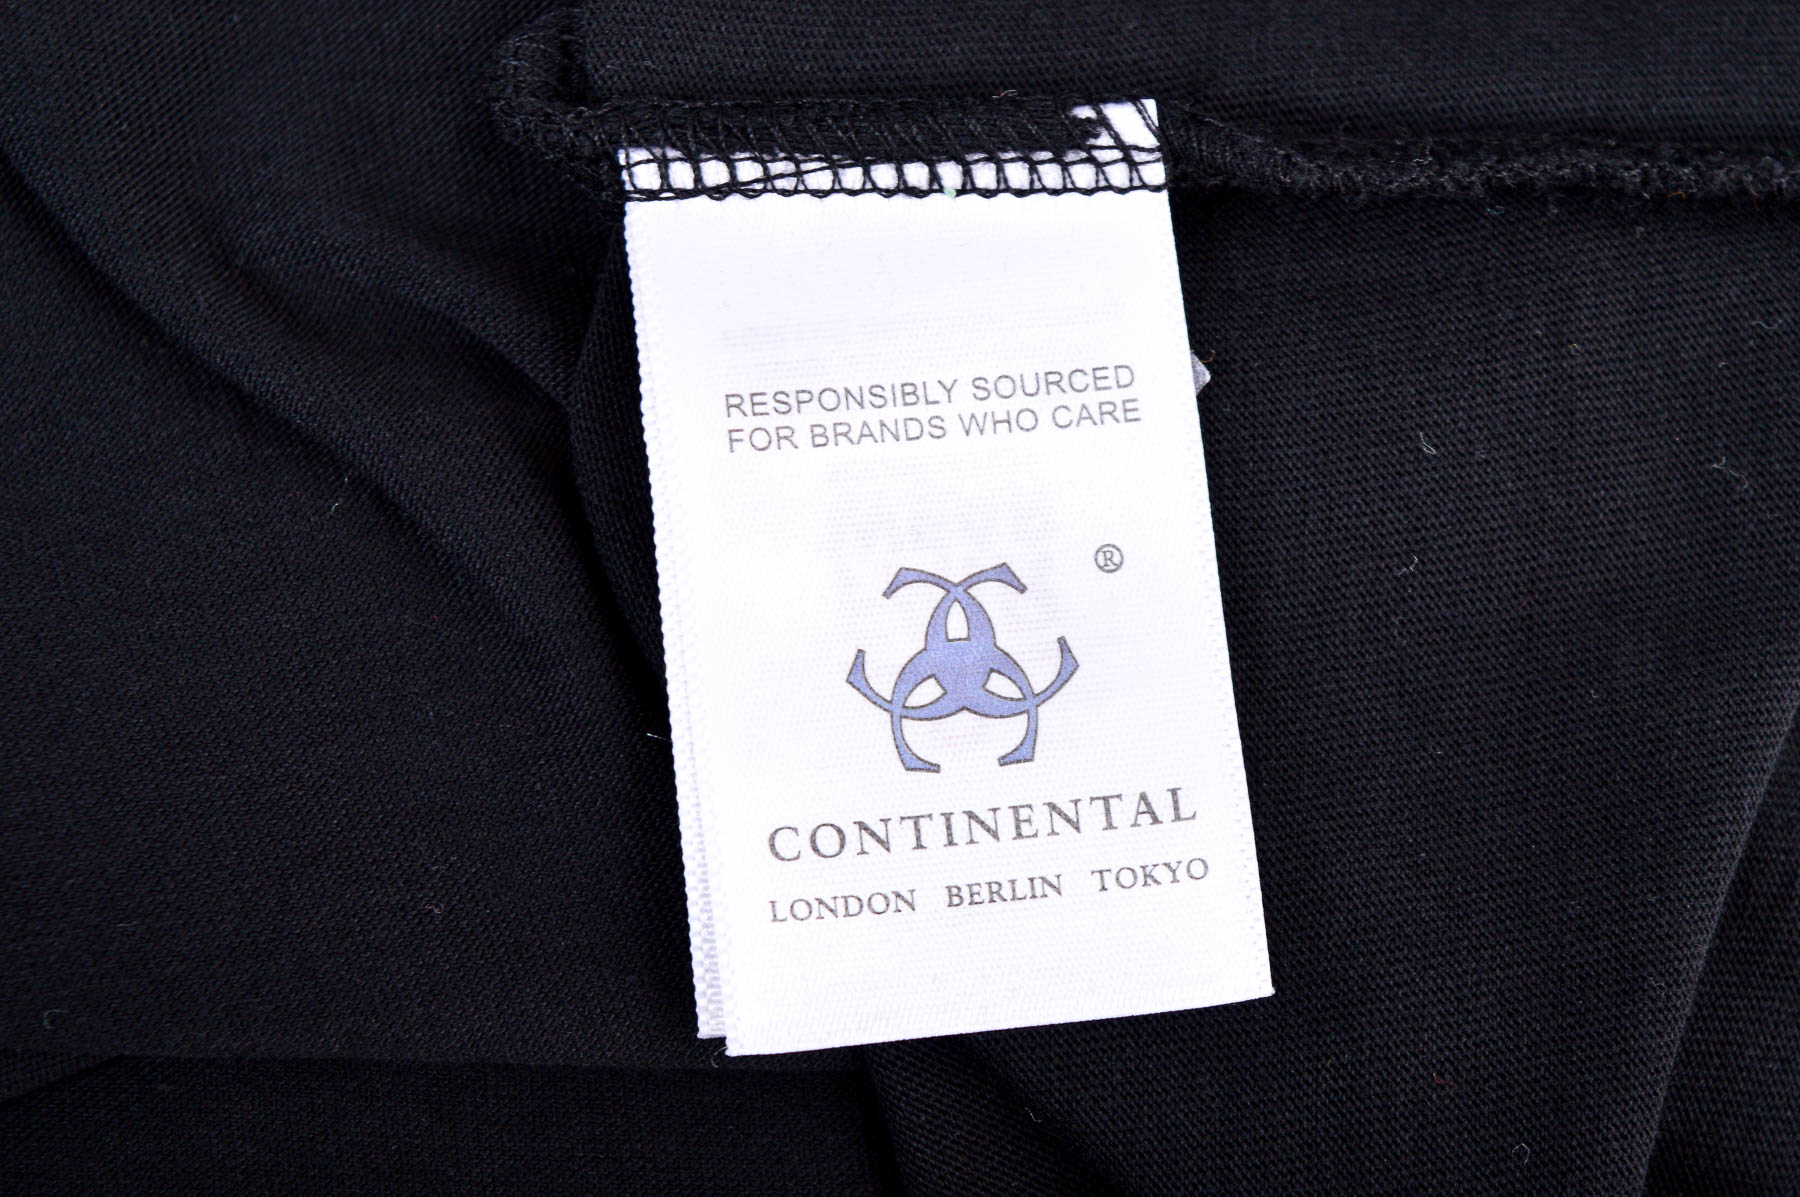 Αντρική μπλούζα - Continental - 2